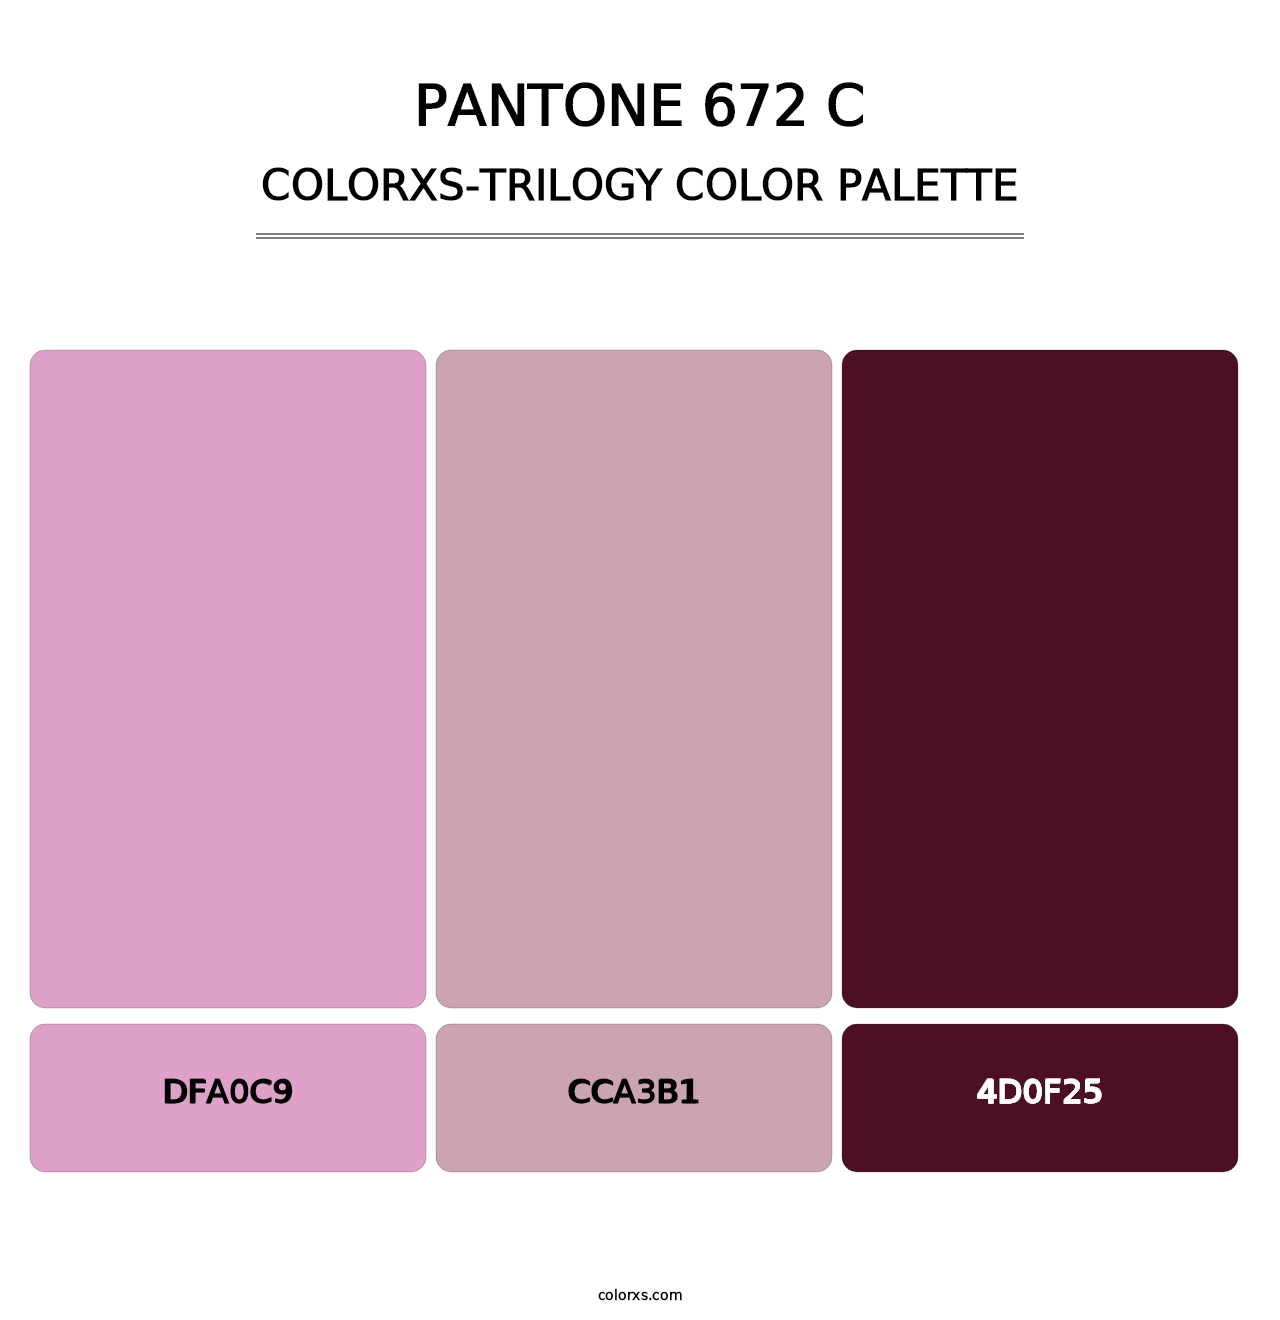 PANTONE 672 C - Colorxs Trilogy Palette